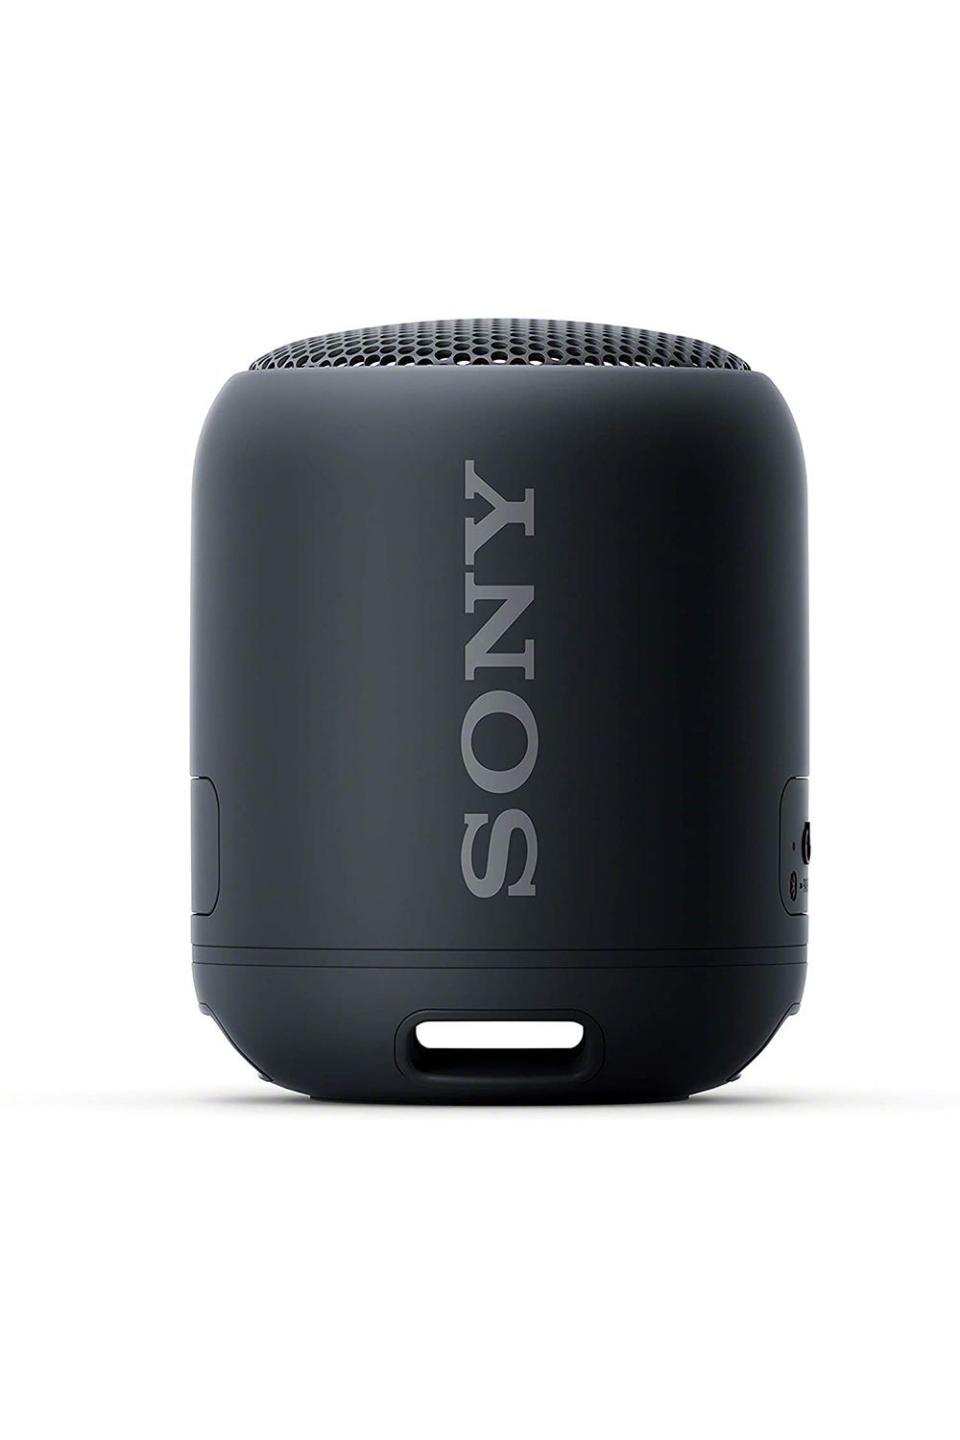 36) SRS-XB12 Mini Bluetooth Speaker